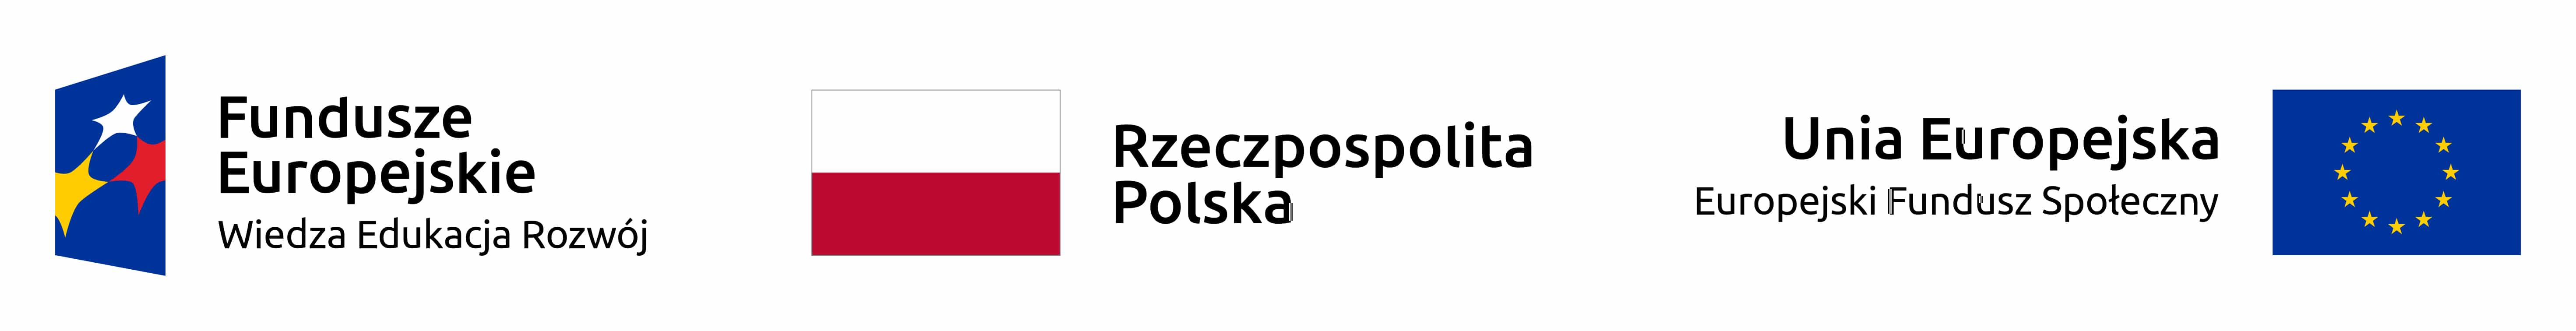 Logotypy Programów Unii Europejskiej i flaga Polski